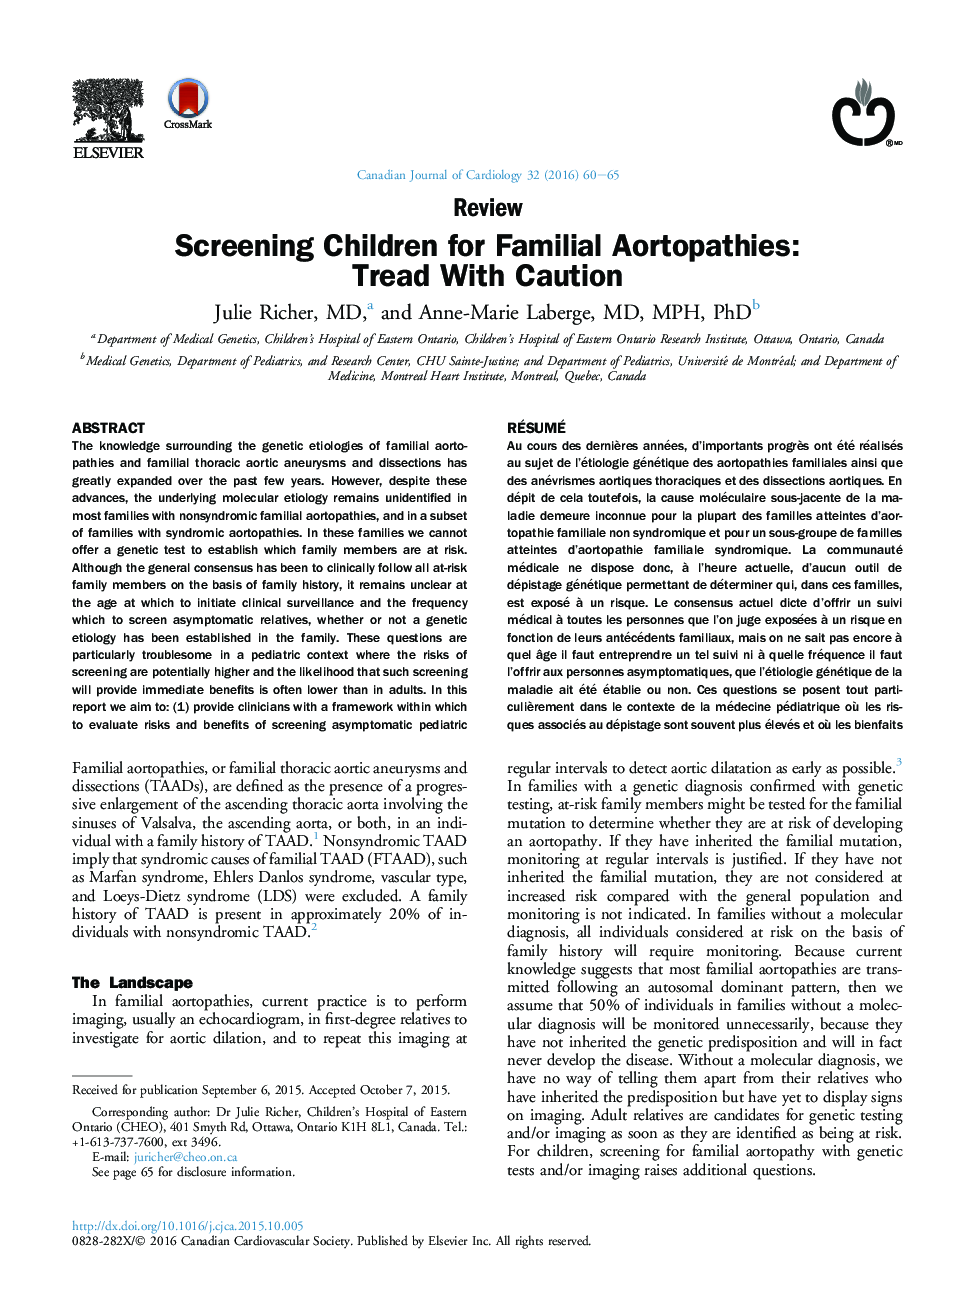 غربالگری کودکان برای Aortopathies خانوادگی: برداشتن گام با احتیاط